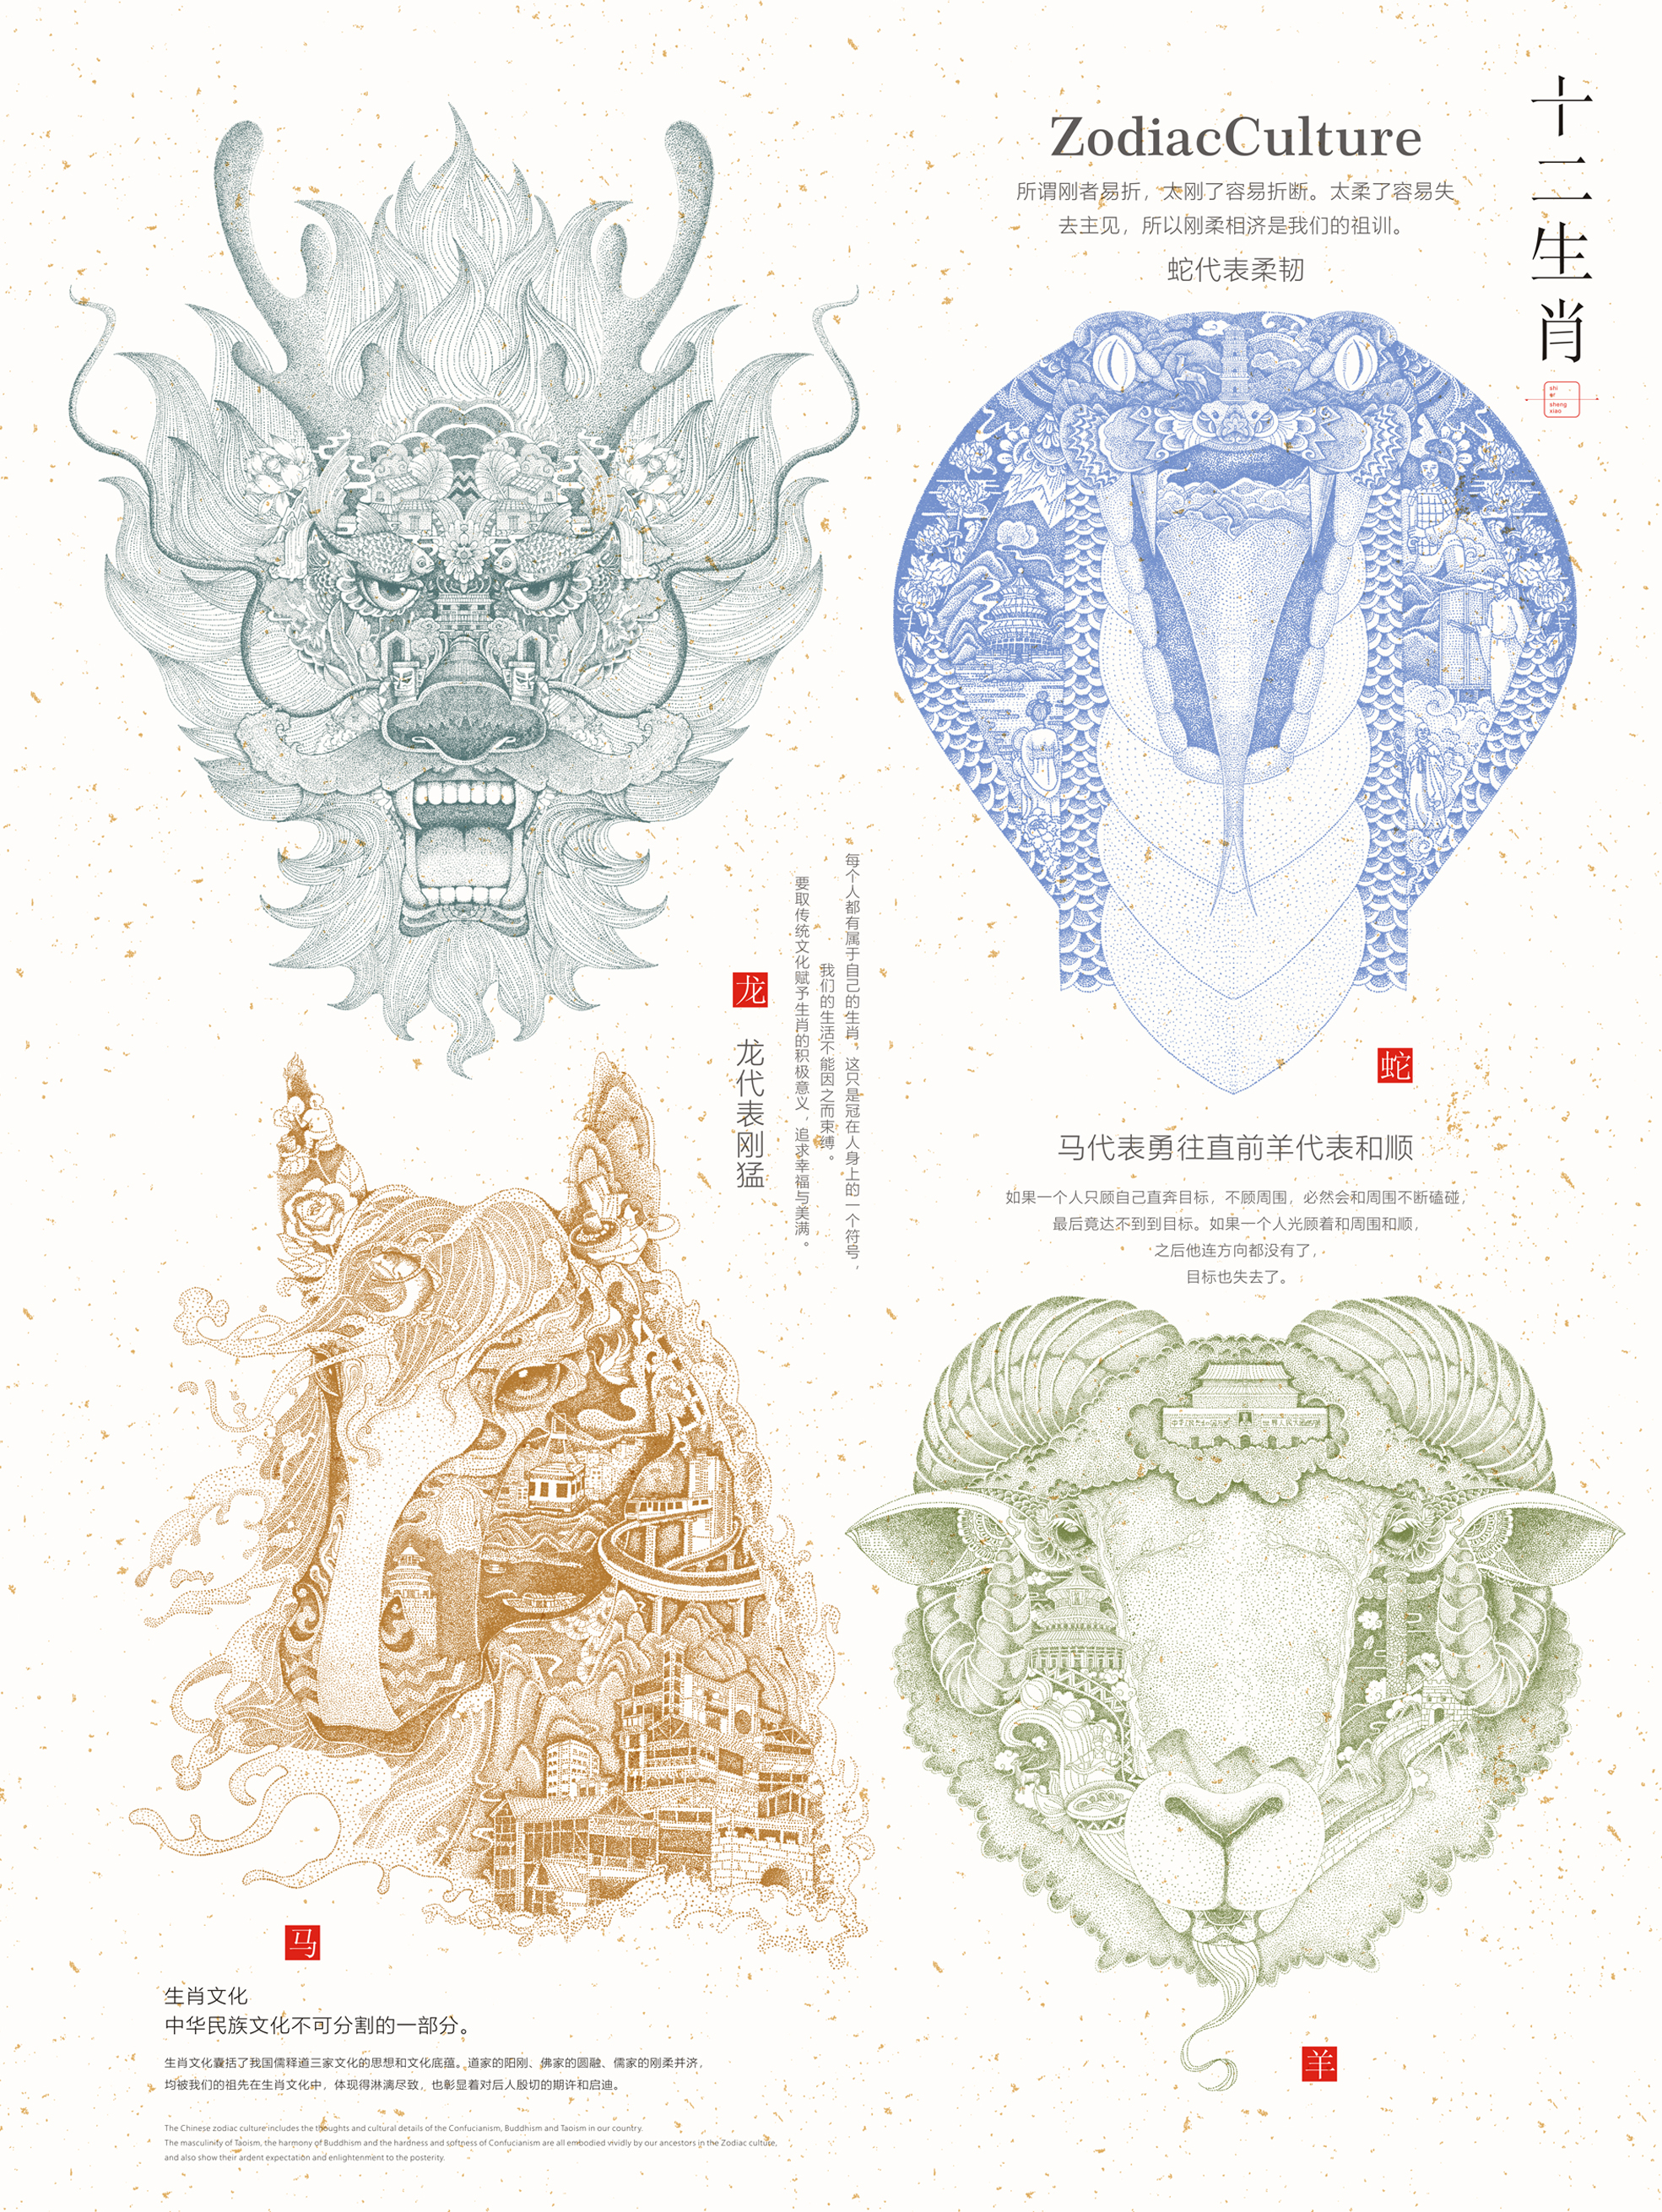 Chinese Zodiac culture